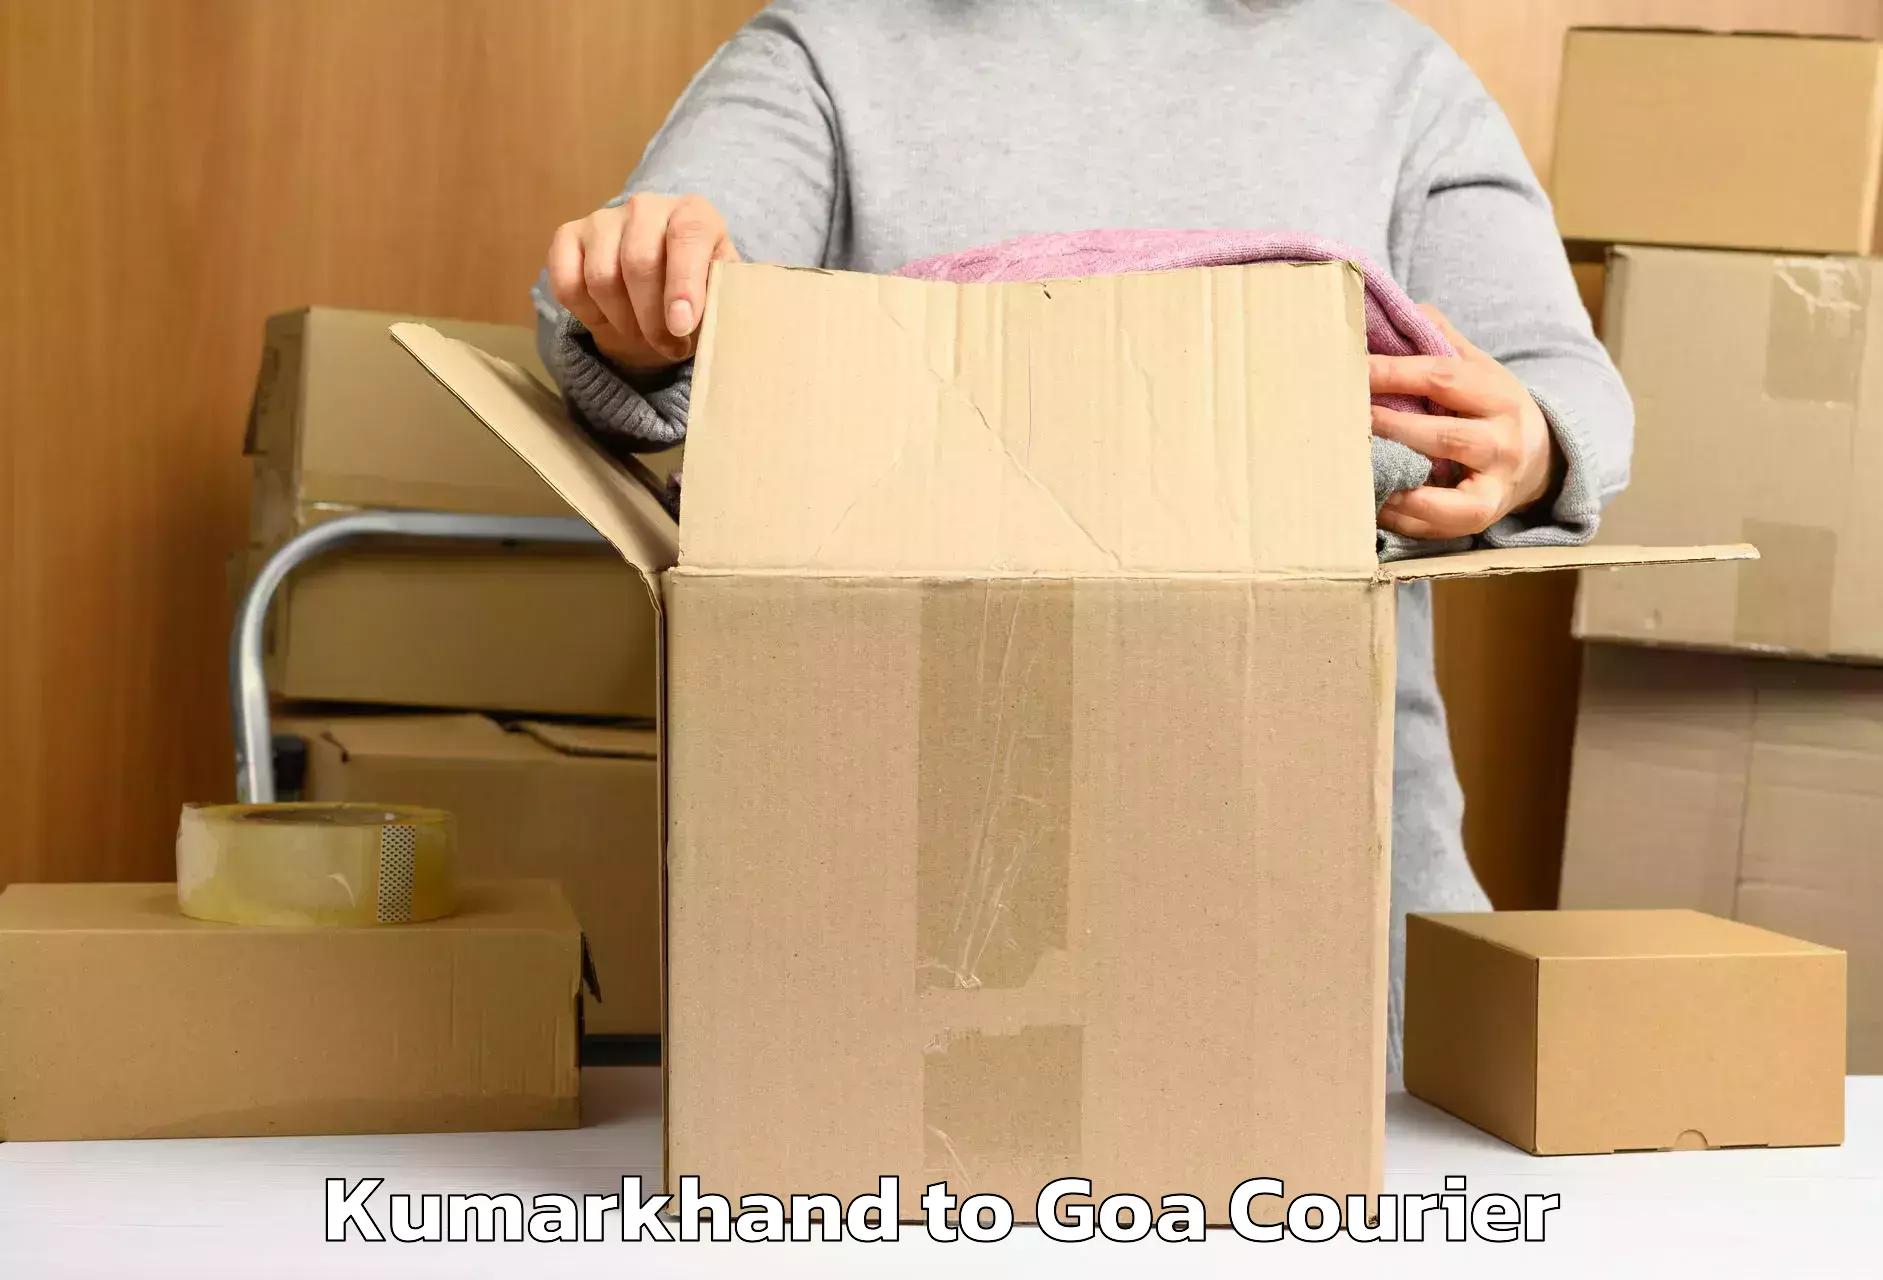 Luggage delivery estimate Kumarkhand to Margao